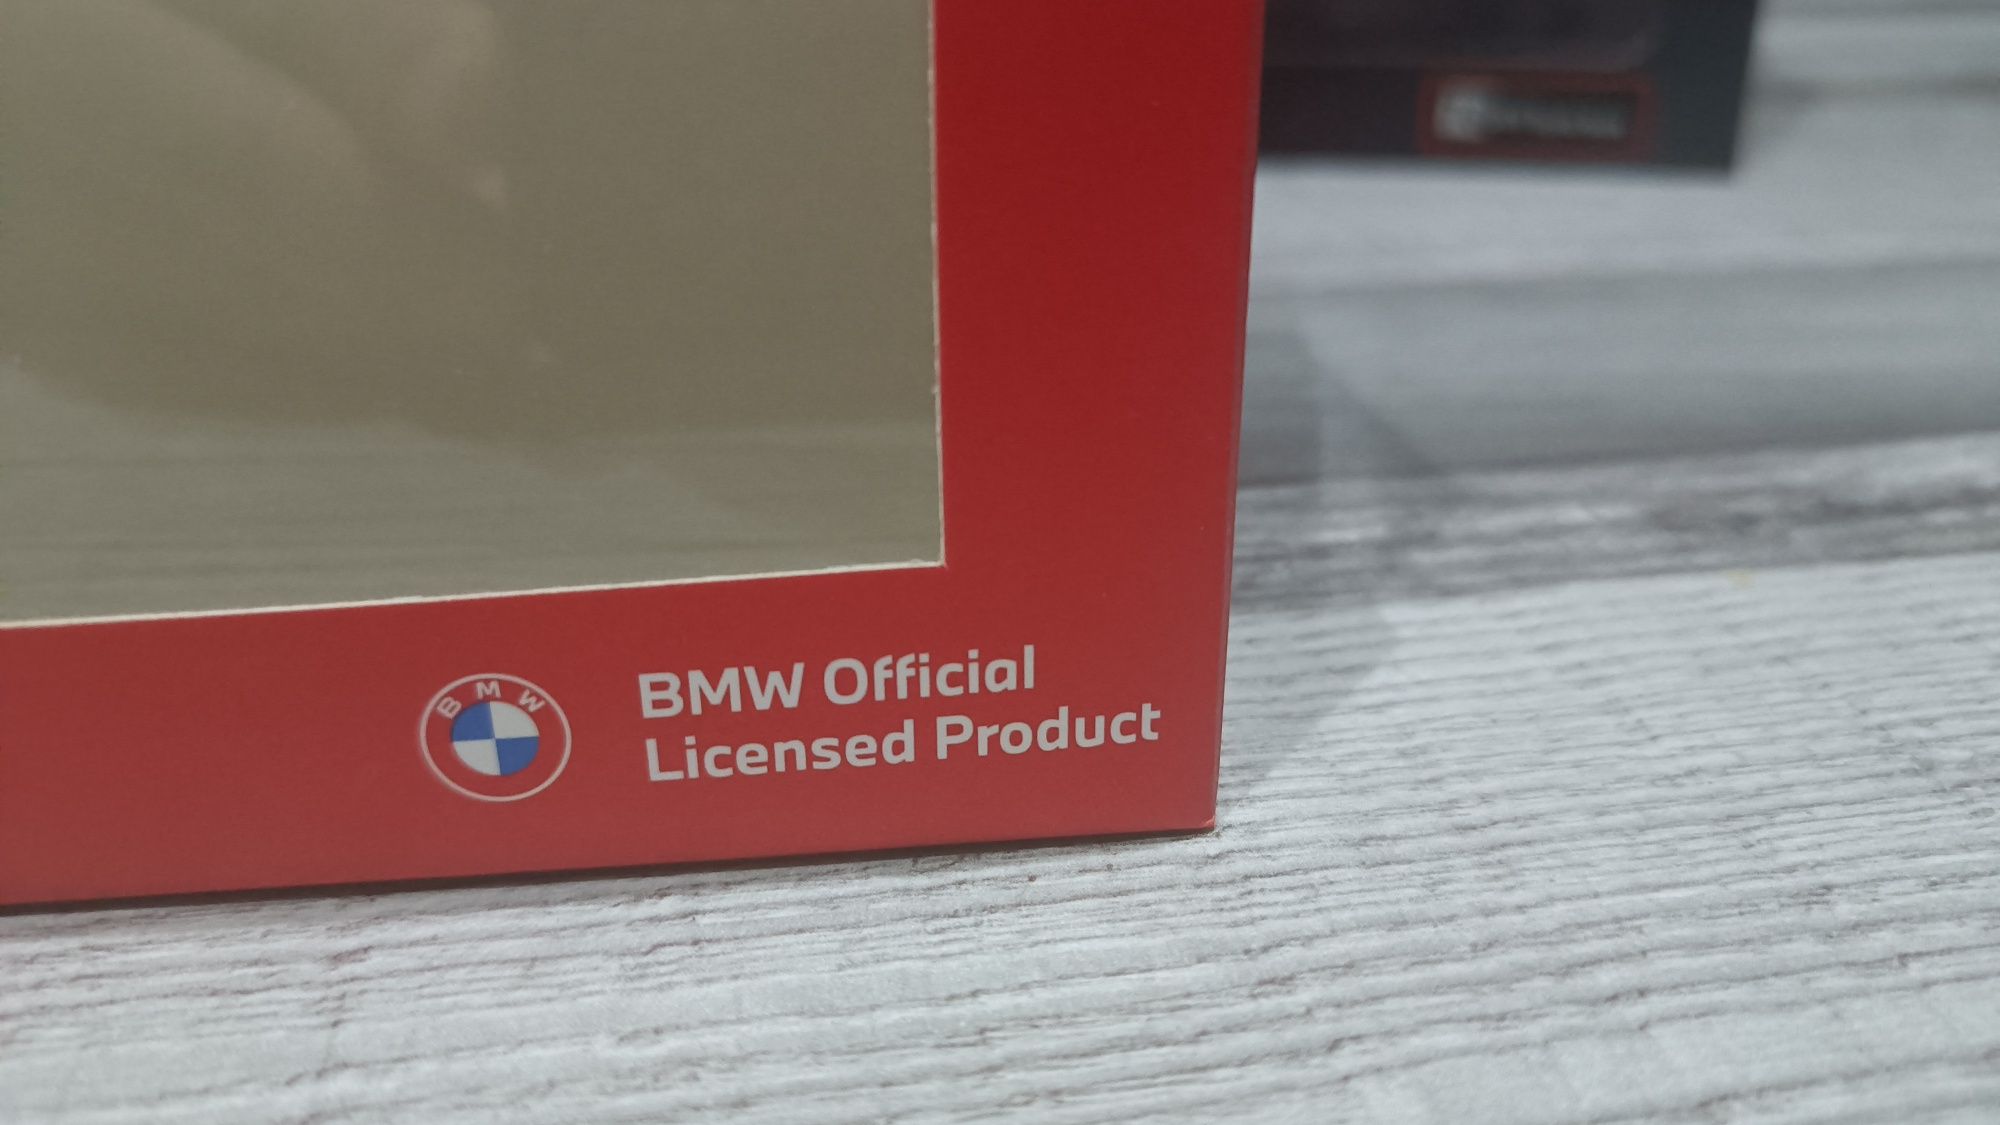 Automodele BMW 750 Li (seria 7) scală 1/43